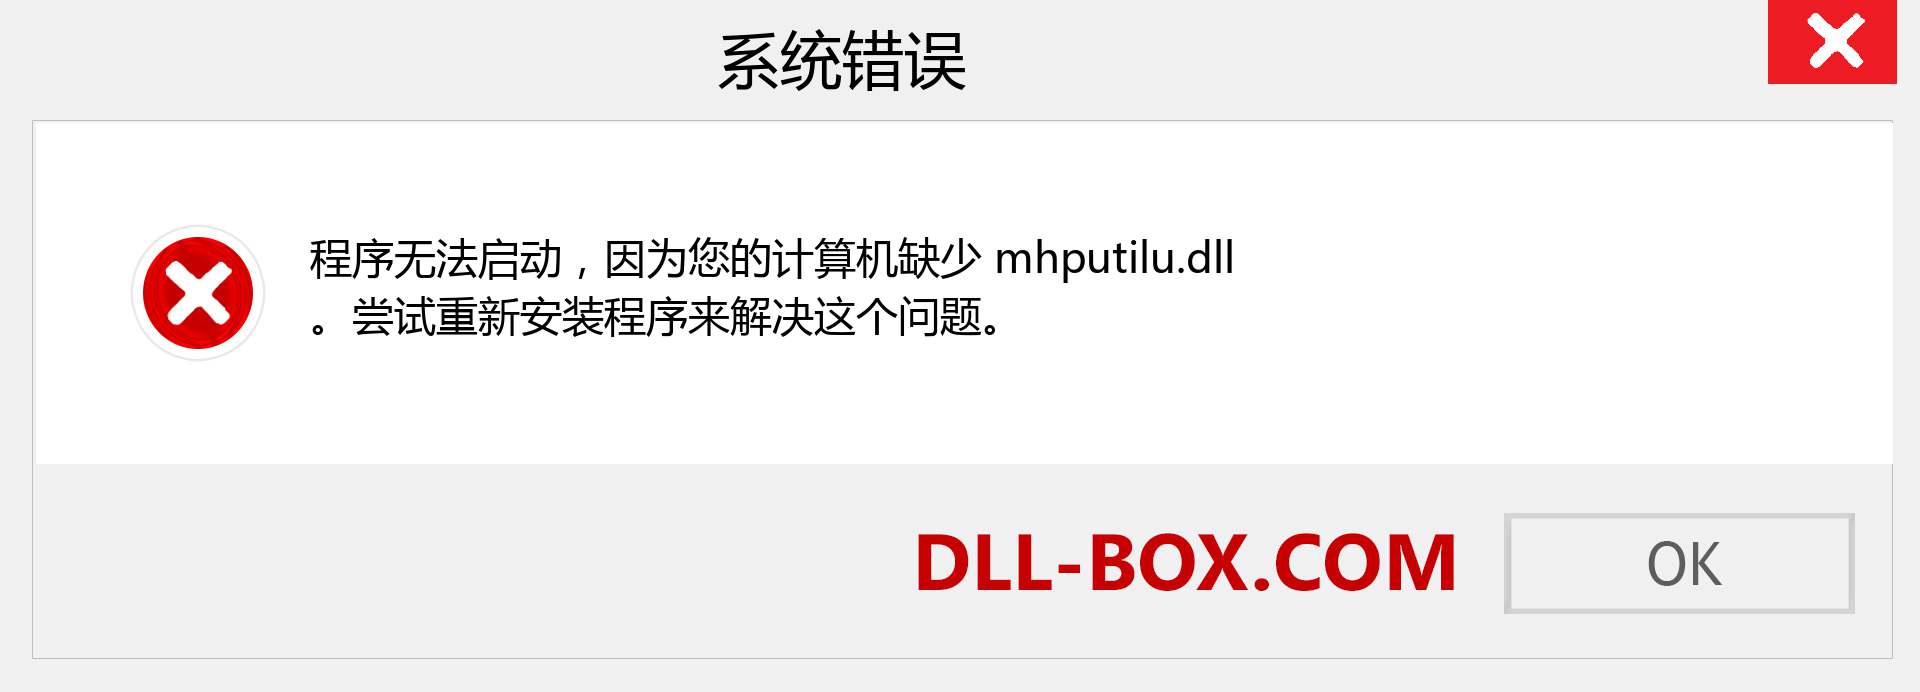 mhputilu.dll 文件丢失？。 适用于 Windows 7、8、10 的下载 - 修复 Windows、照片、图像上的 mhputilu dll 丢失错误